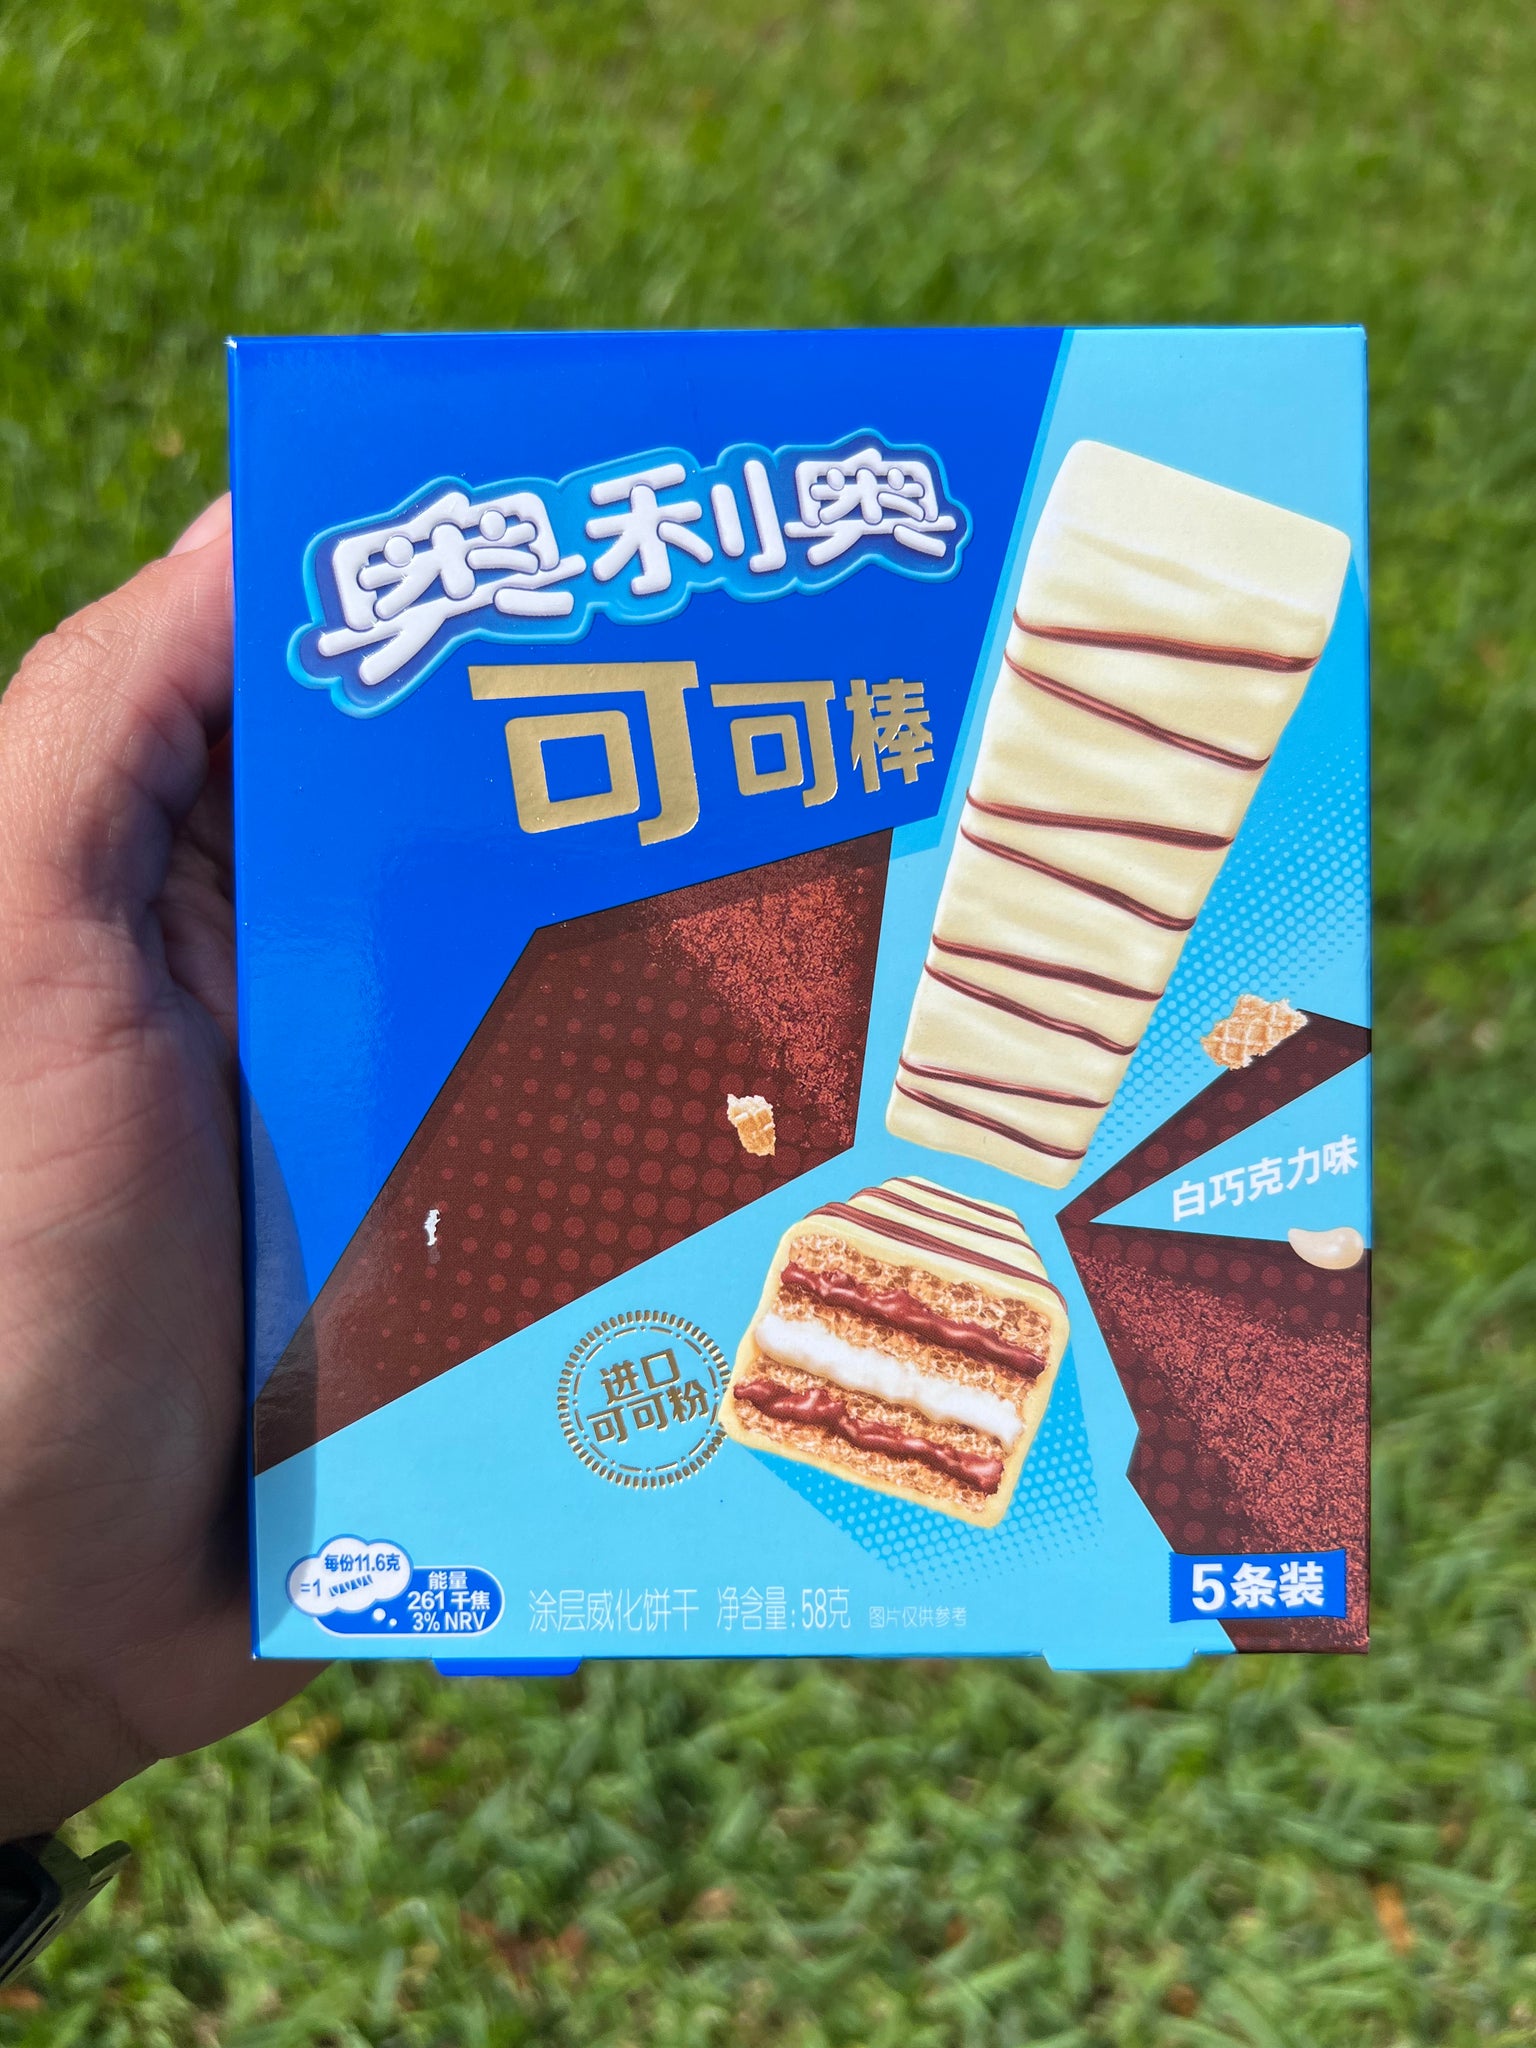 Oreo White Chocolate Covered Wafers (China)